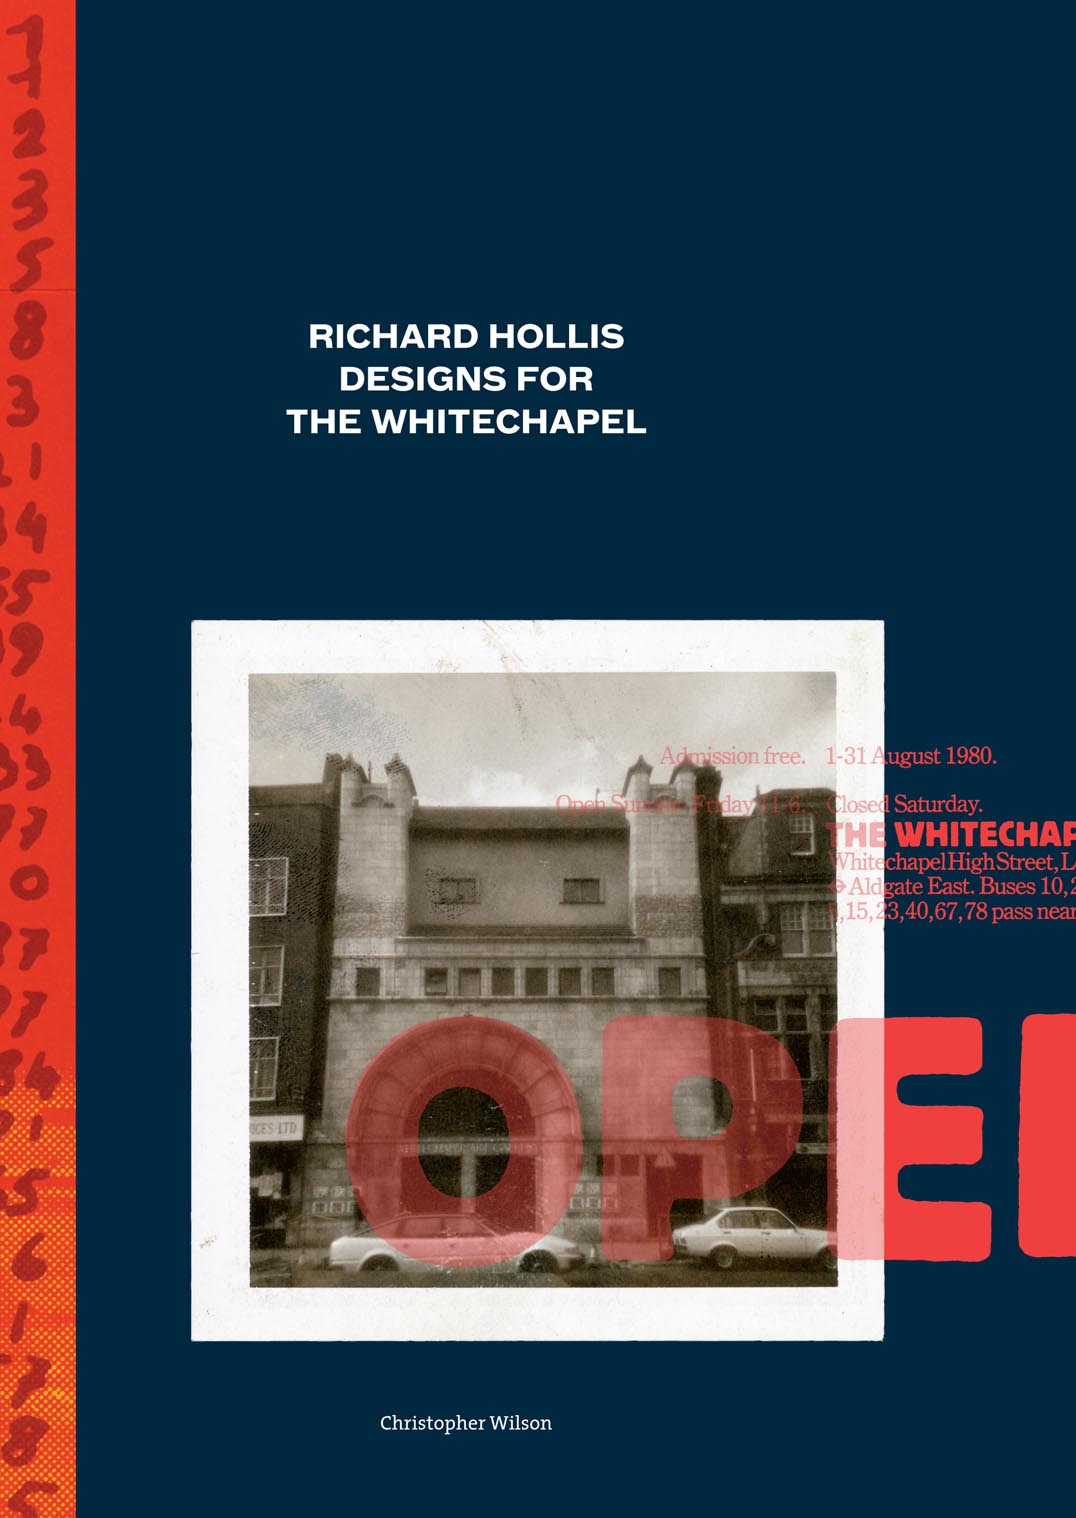 ‘Richard Holllis designs for the Whitechapel’: progress